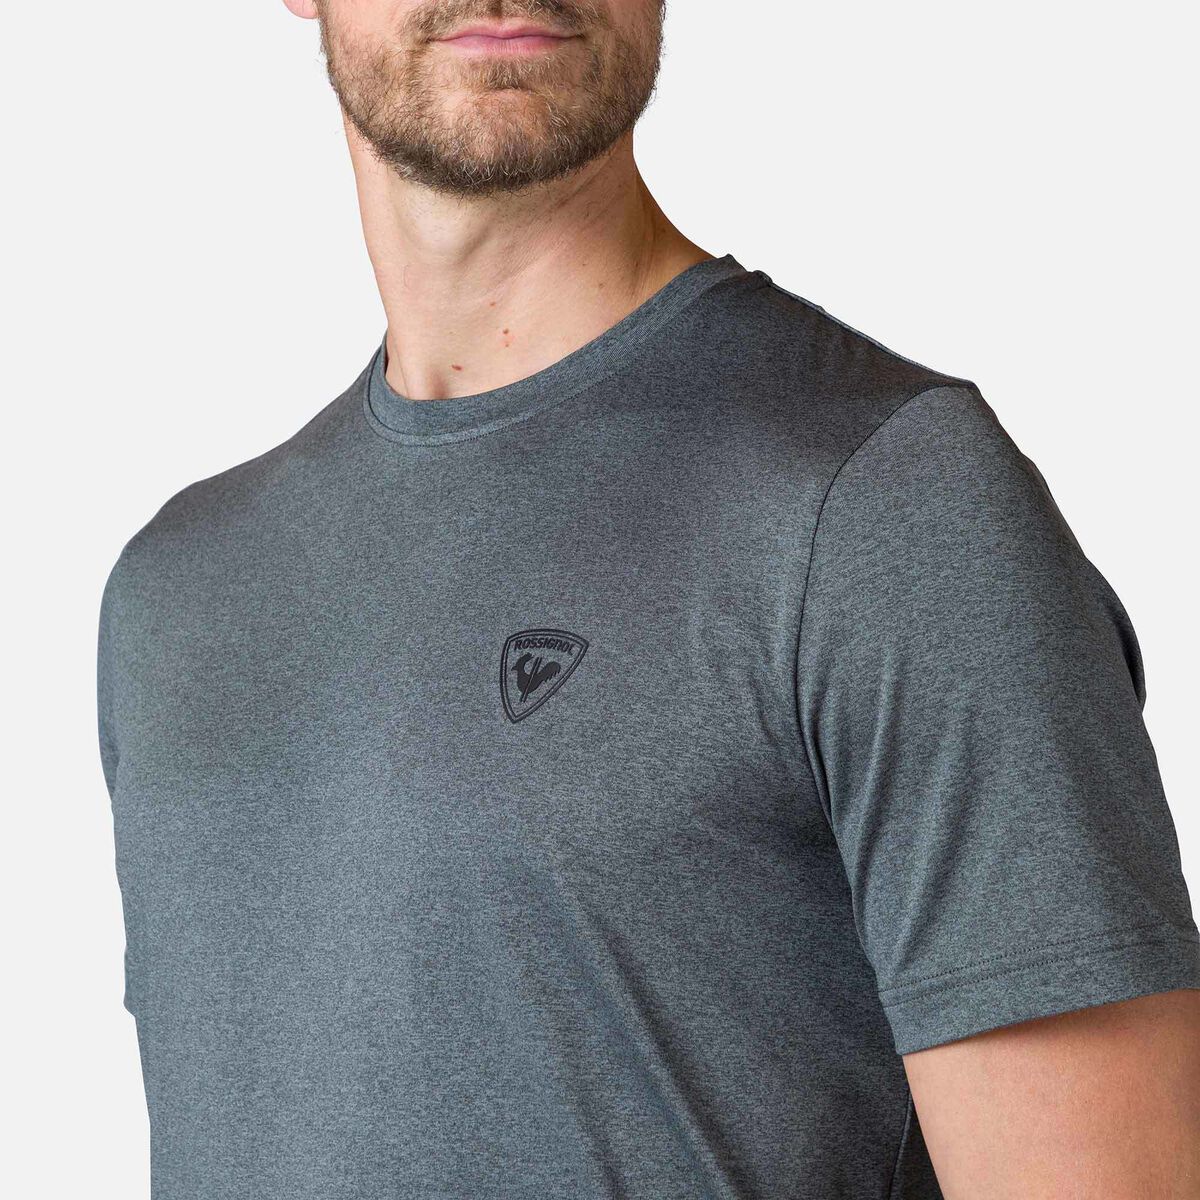 Rossignol Active Herren-T-Shirt mit Flammengarn grey